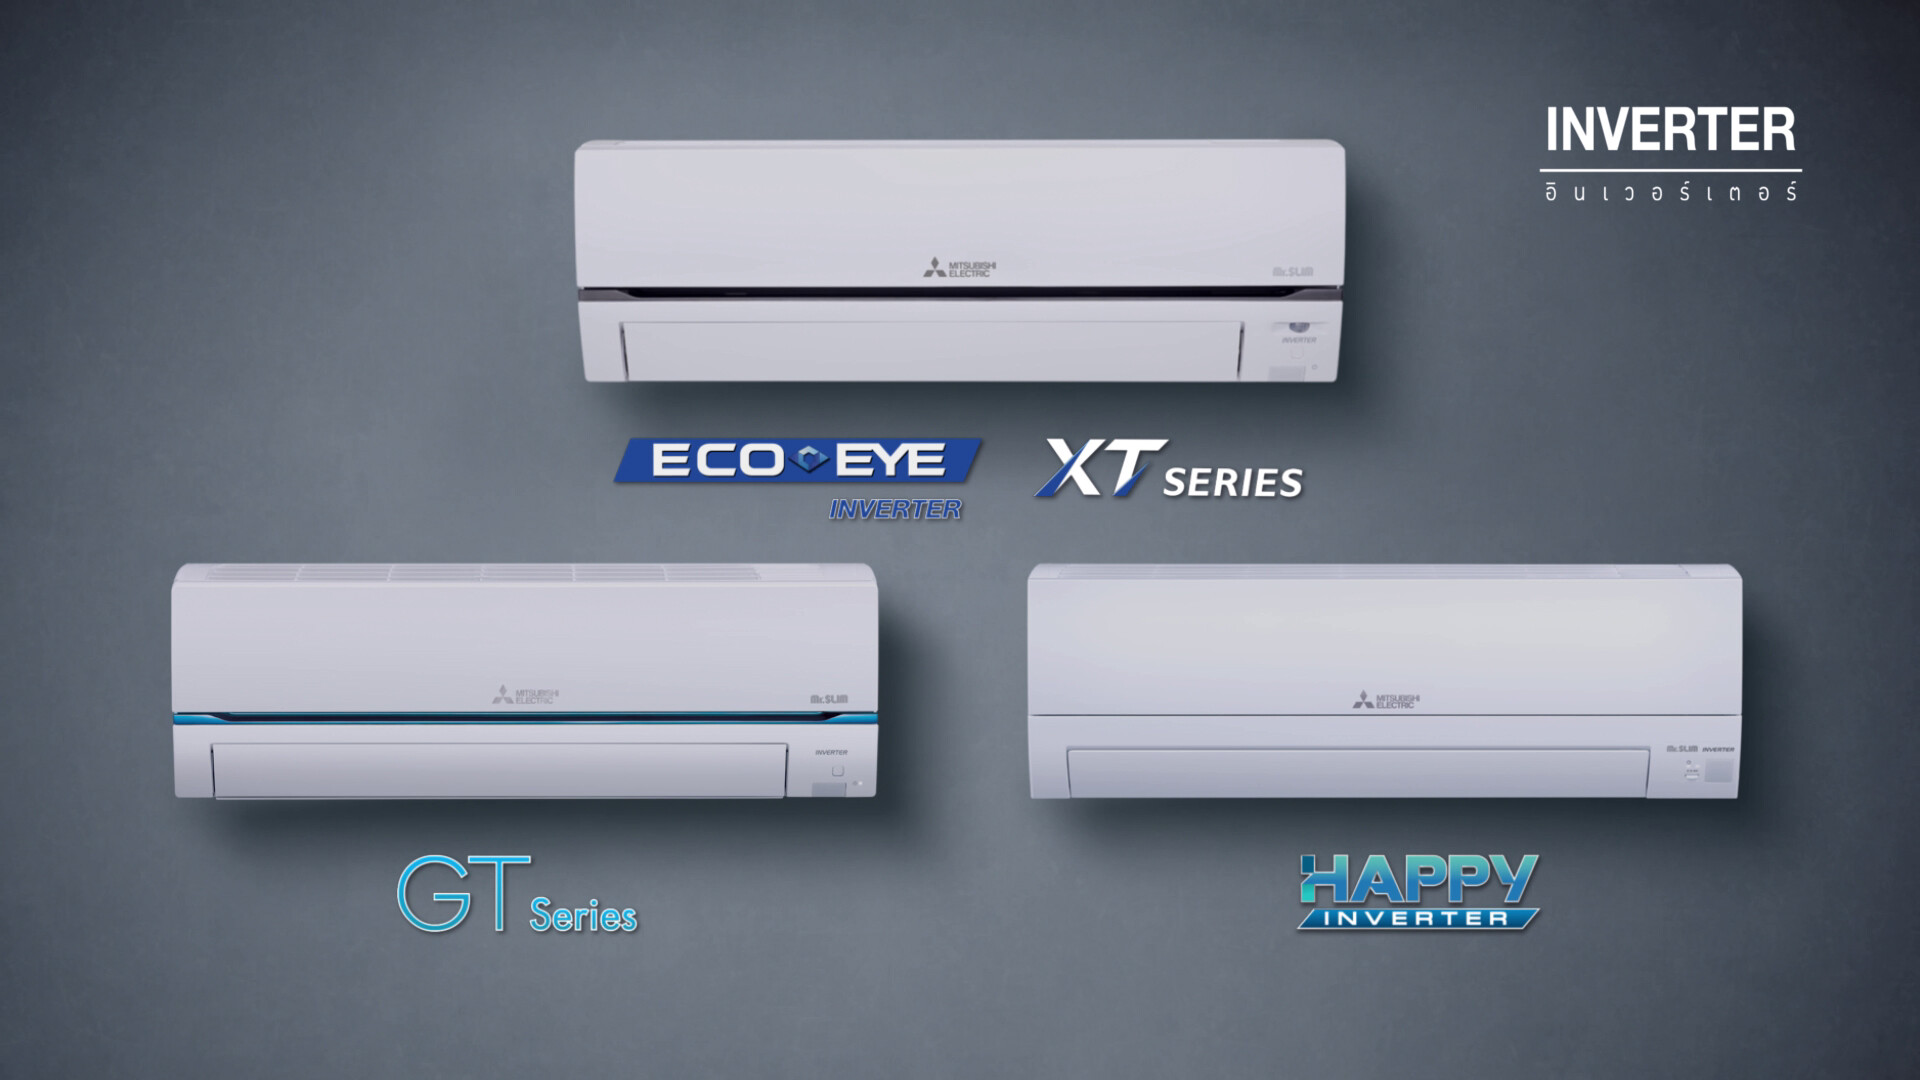 มิตซูบิชิ อีเล็คทริค ย้ำจุดยืนแบรนด์อันดับ 1 ที่ผู้บริโภคไว้วางใจ เปิดตัวเครื่องปรับอากาศใหม่ ECO EYE INVERTER XT Series